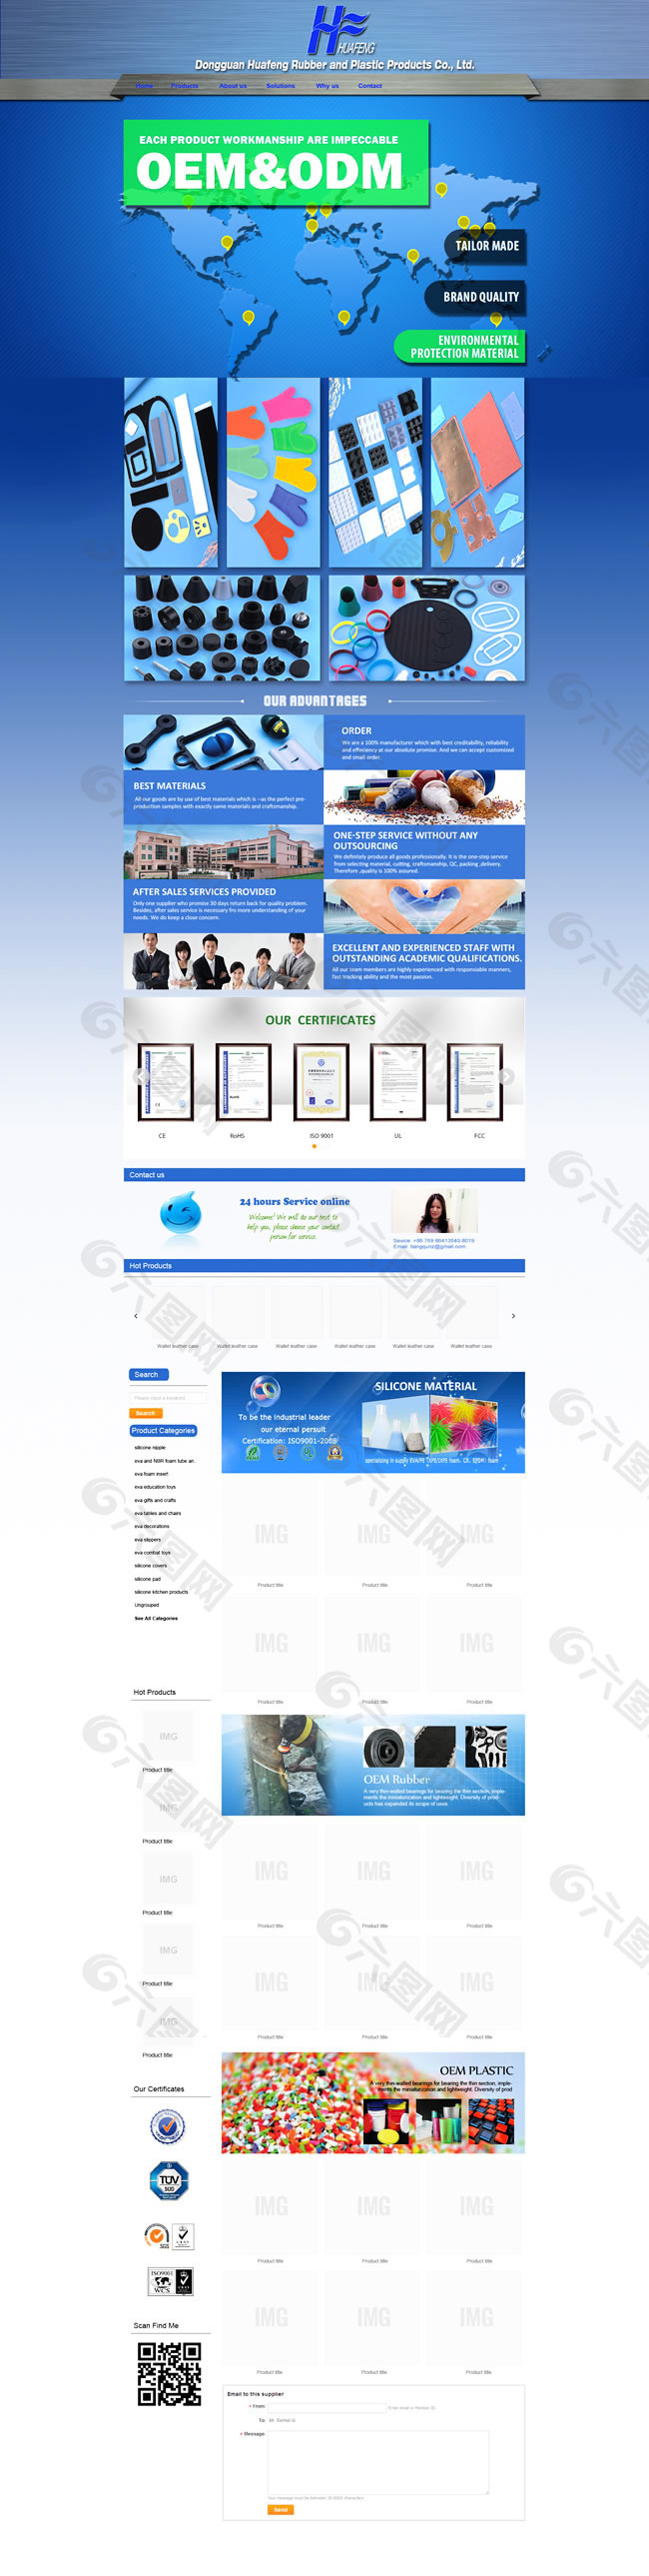 国外企业网站模板PSD素材